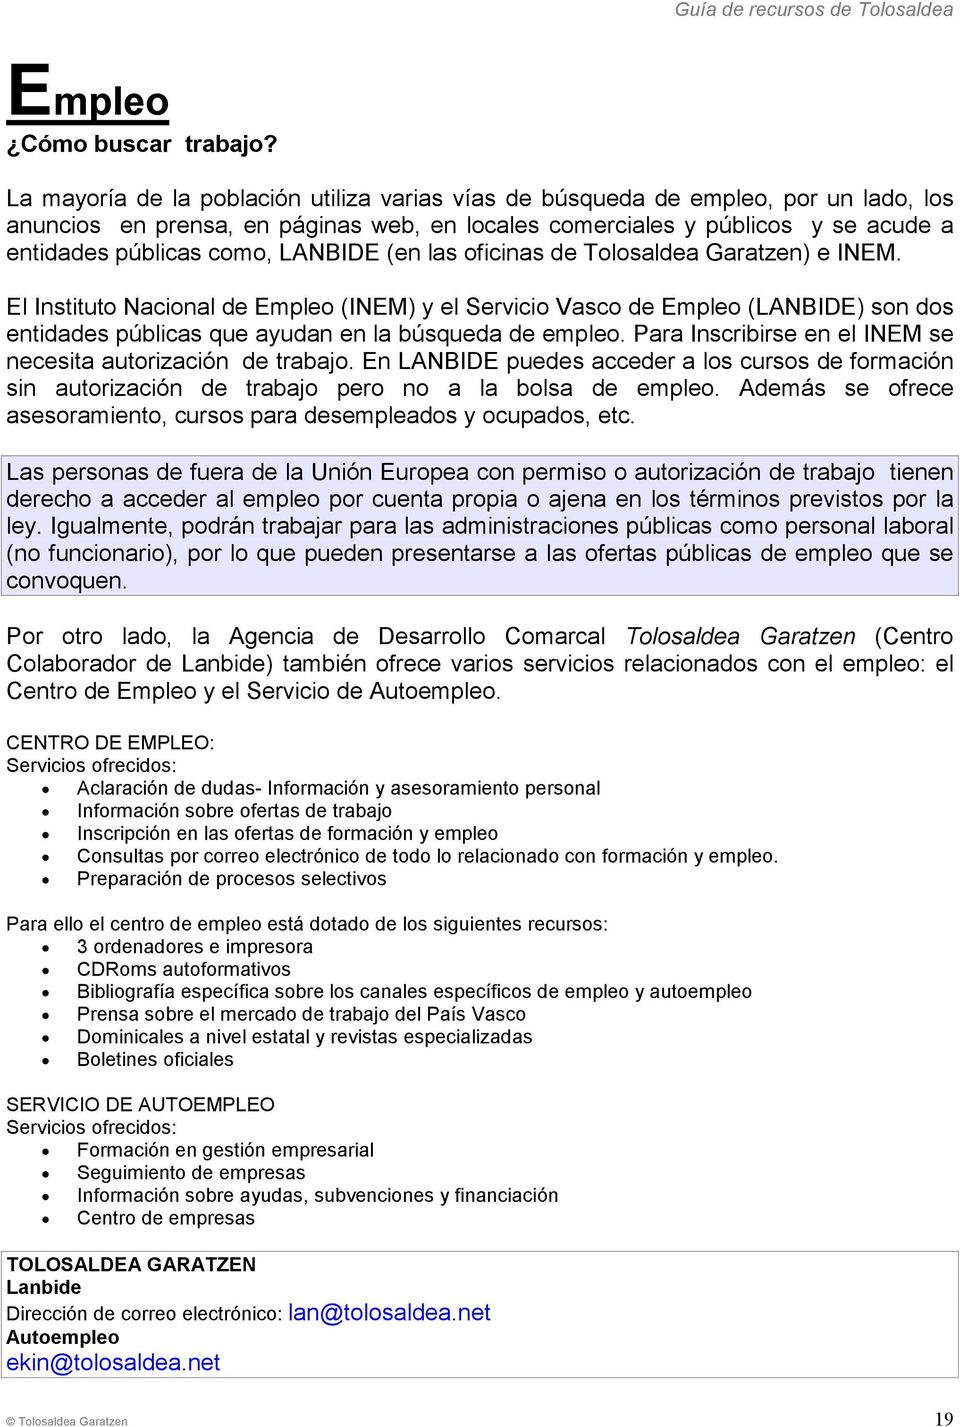 LANBIDE (en las oficinas de Tolosaldea Garatzen) e INEM. El Instituto Nacional de Empleo (INEM) y el Servicio Vasco de Empleo (LANBIDE) son dos entidades públicas que ayudan en la búsqueda de empleo.